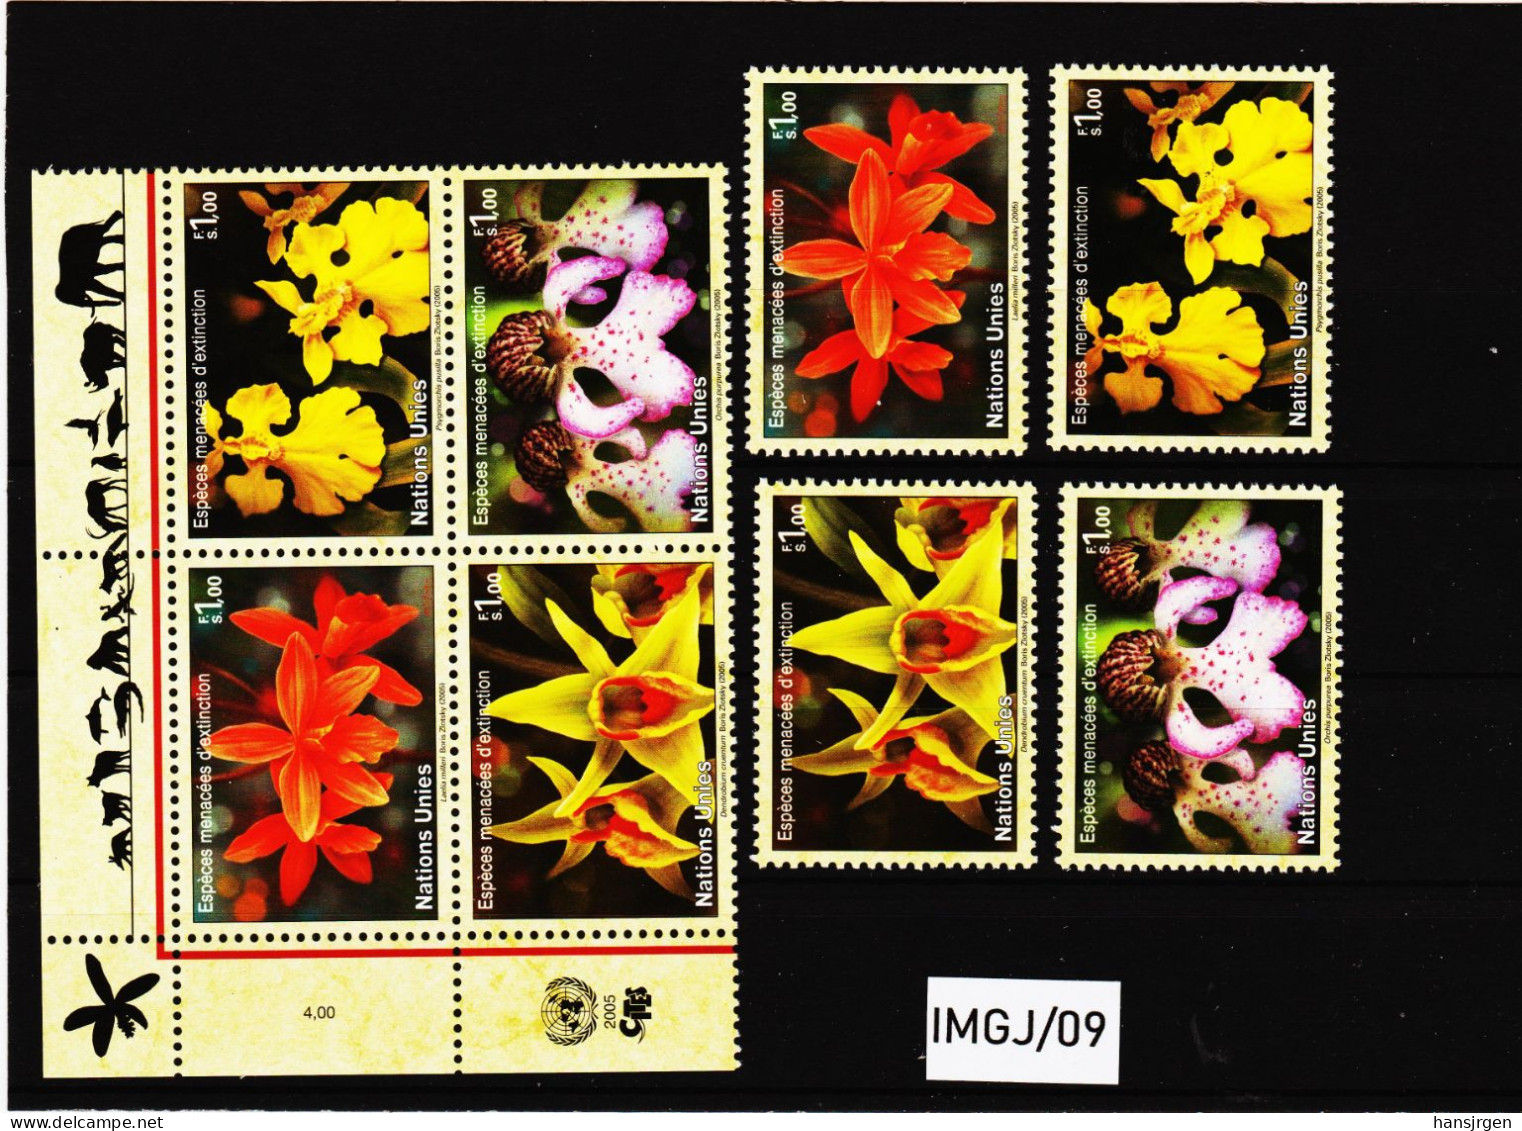 IMGJ/09 UNO GENF 2005 MICHL  510/13  Postfrisch ** SIEHE ABBILDUNG - Unused Stamps